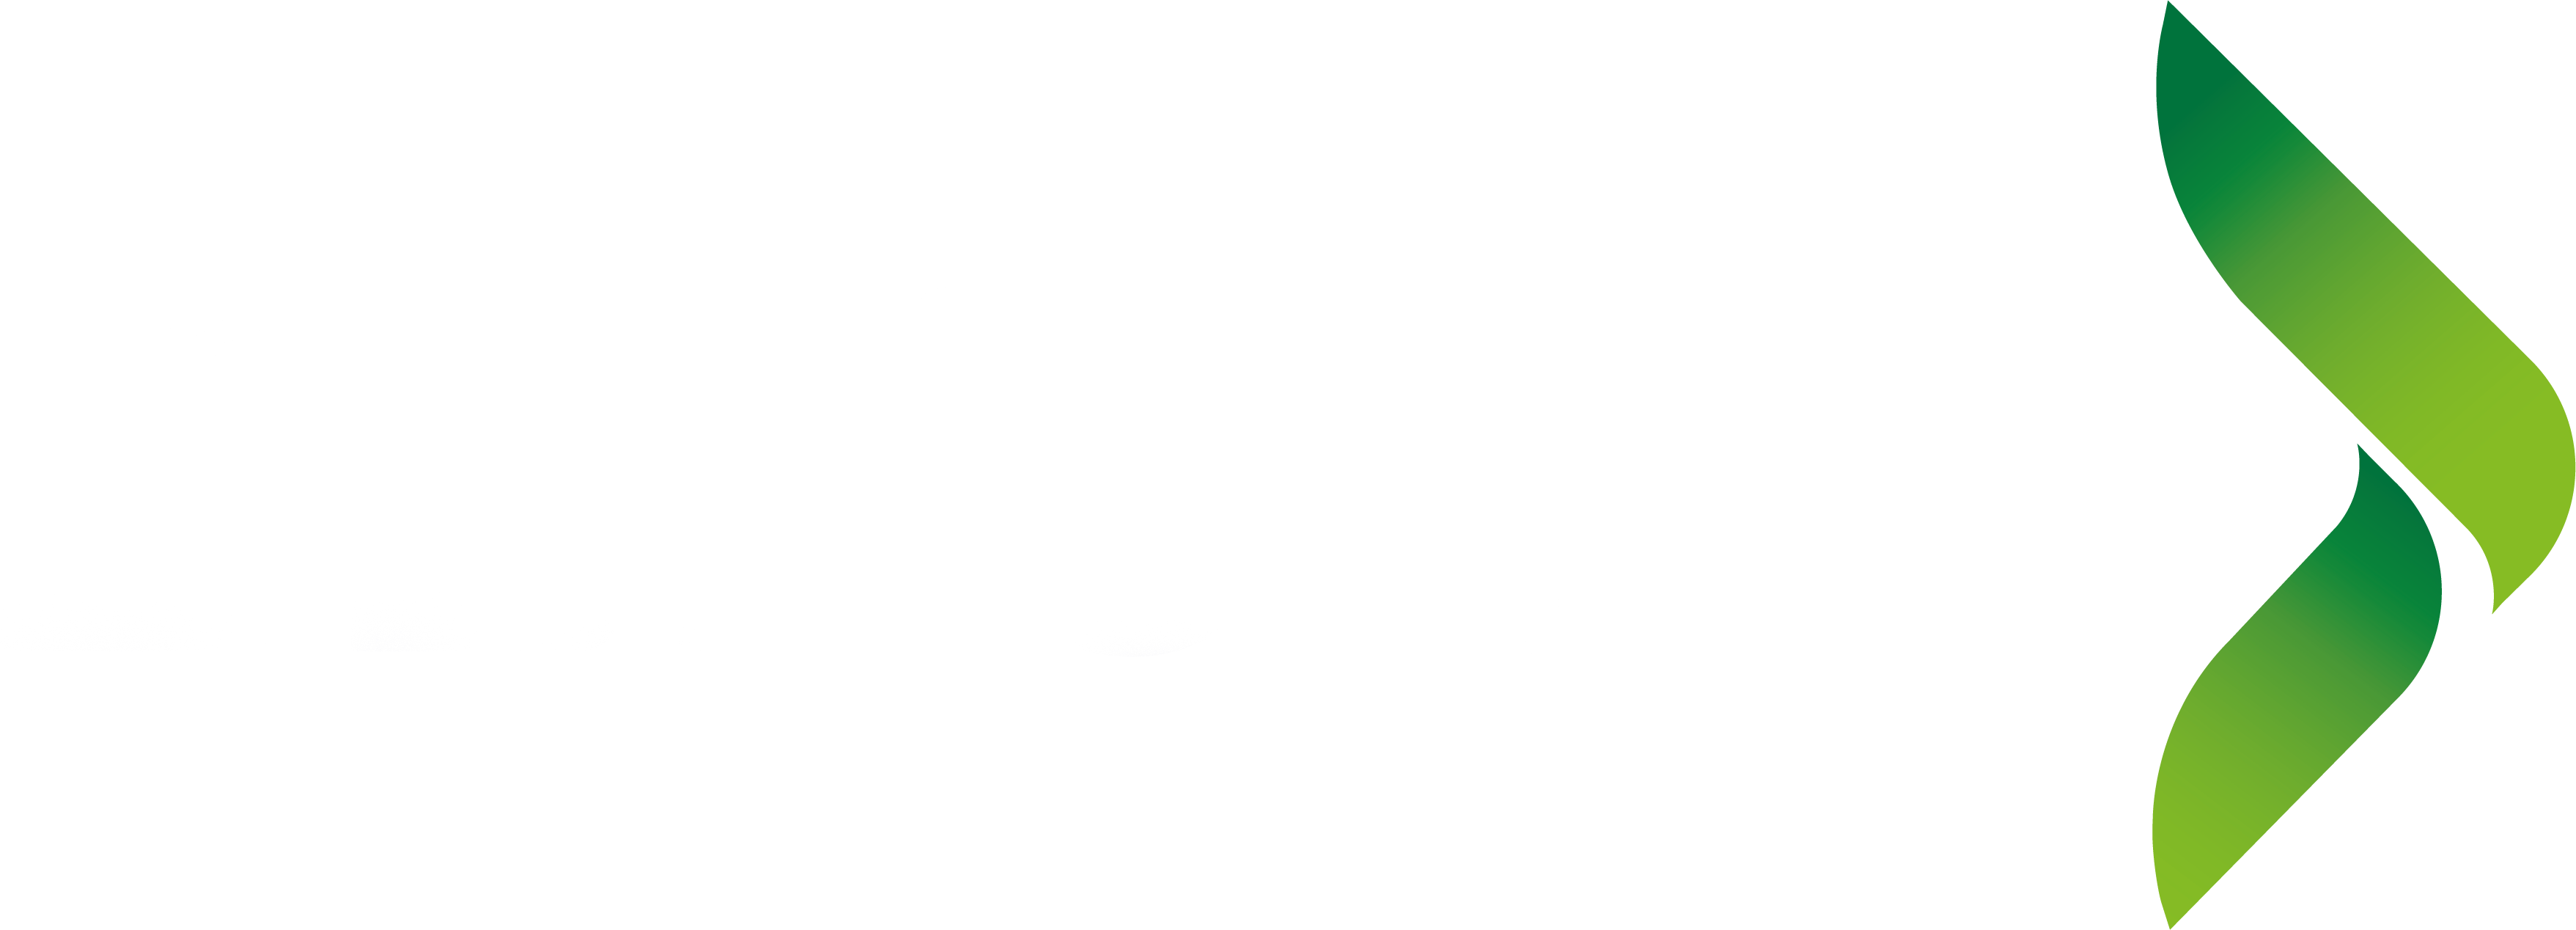 Elkjop_logo_white-1